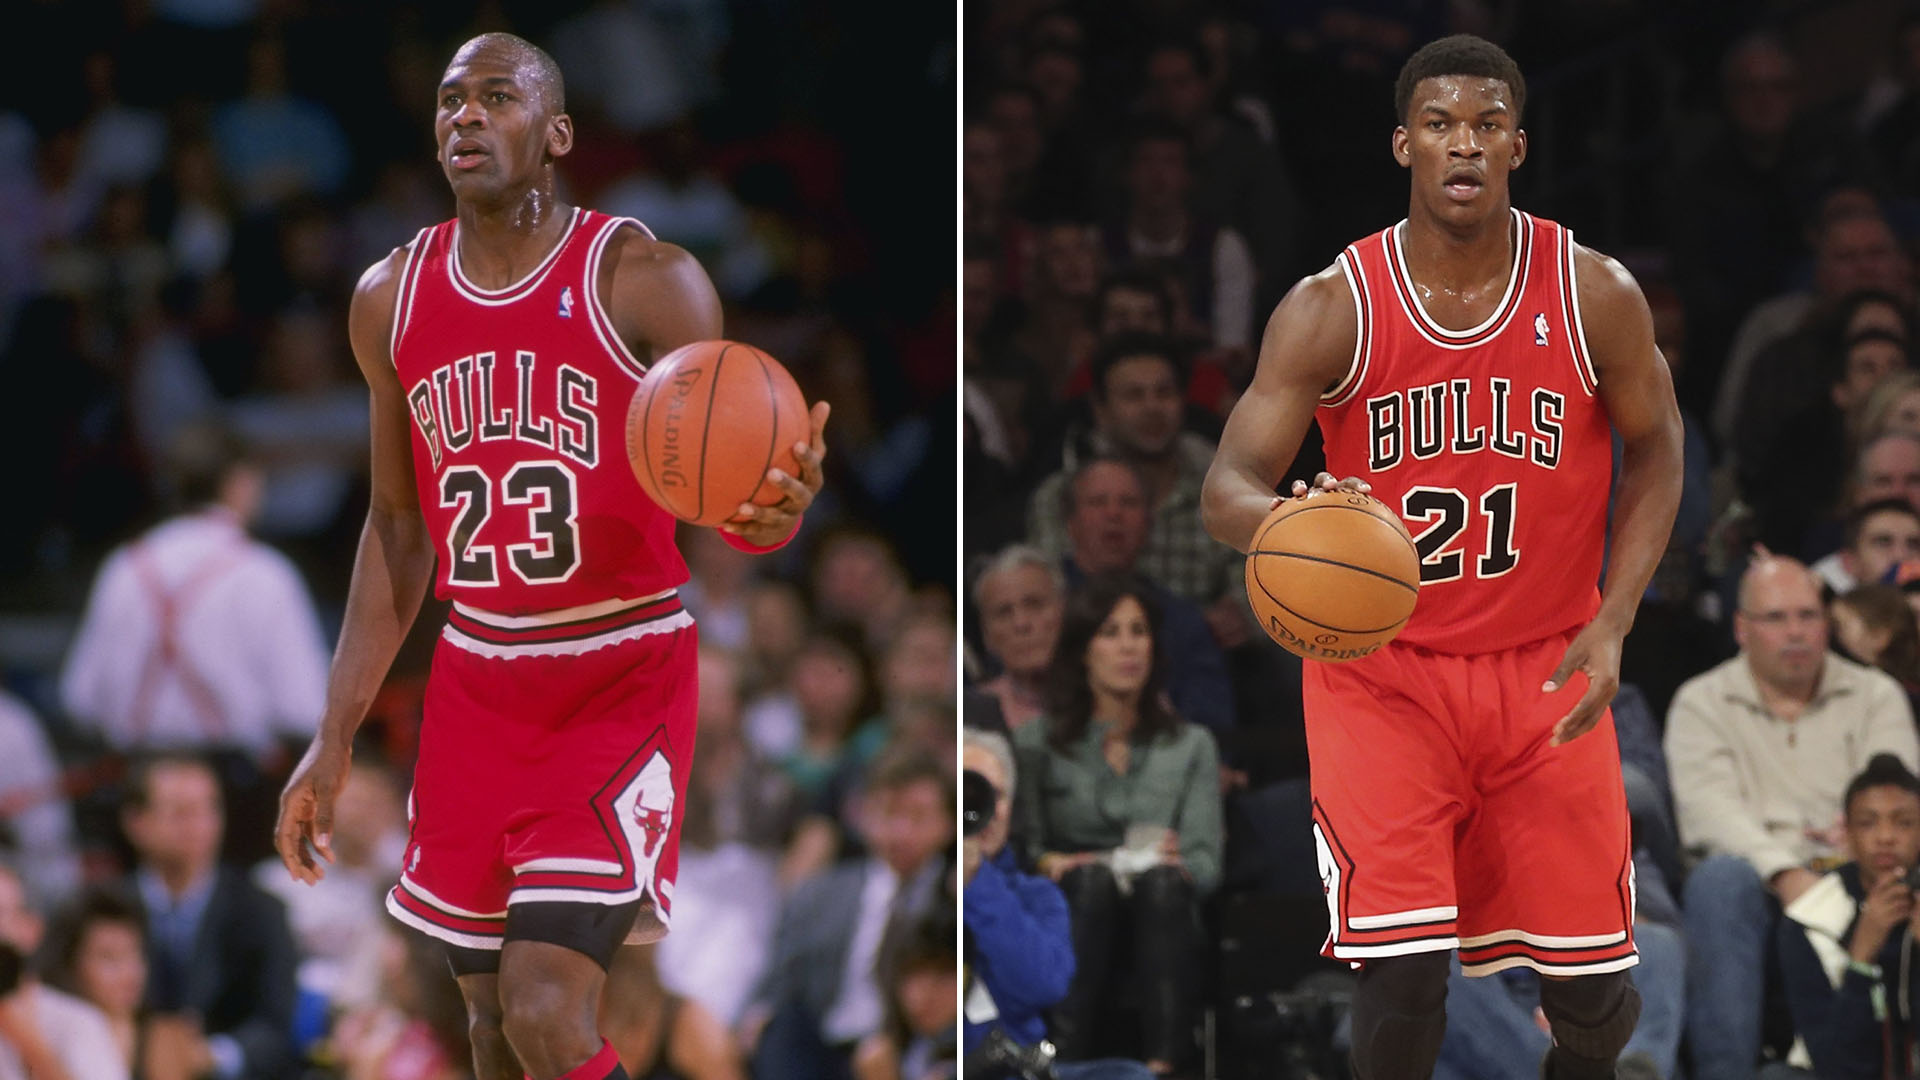 Resign Pathological antenna La teoría más loca de la NBA: ¿es Jimmy Butler el hijo no reconocido de Michael  Jordan? - Infobae